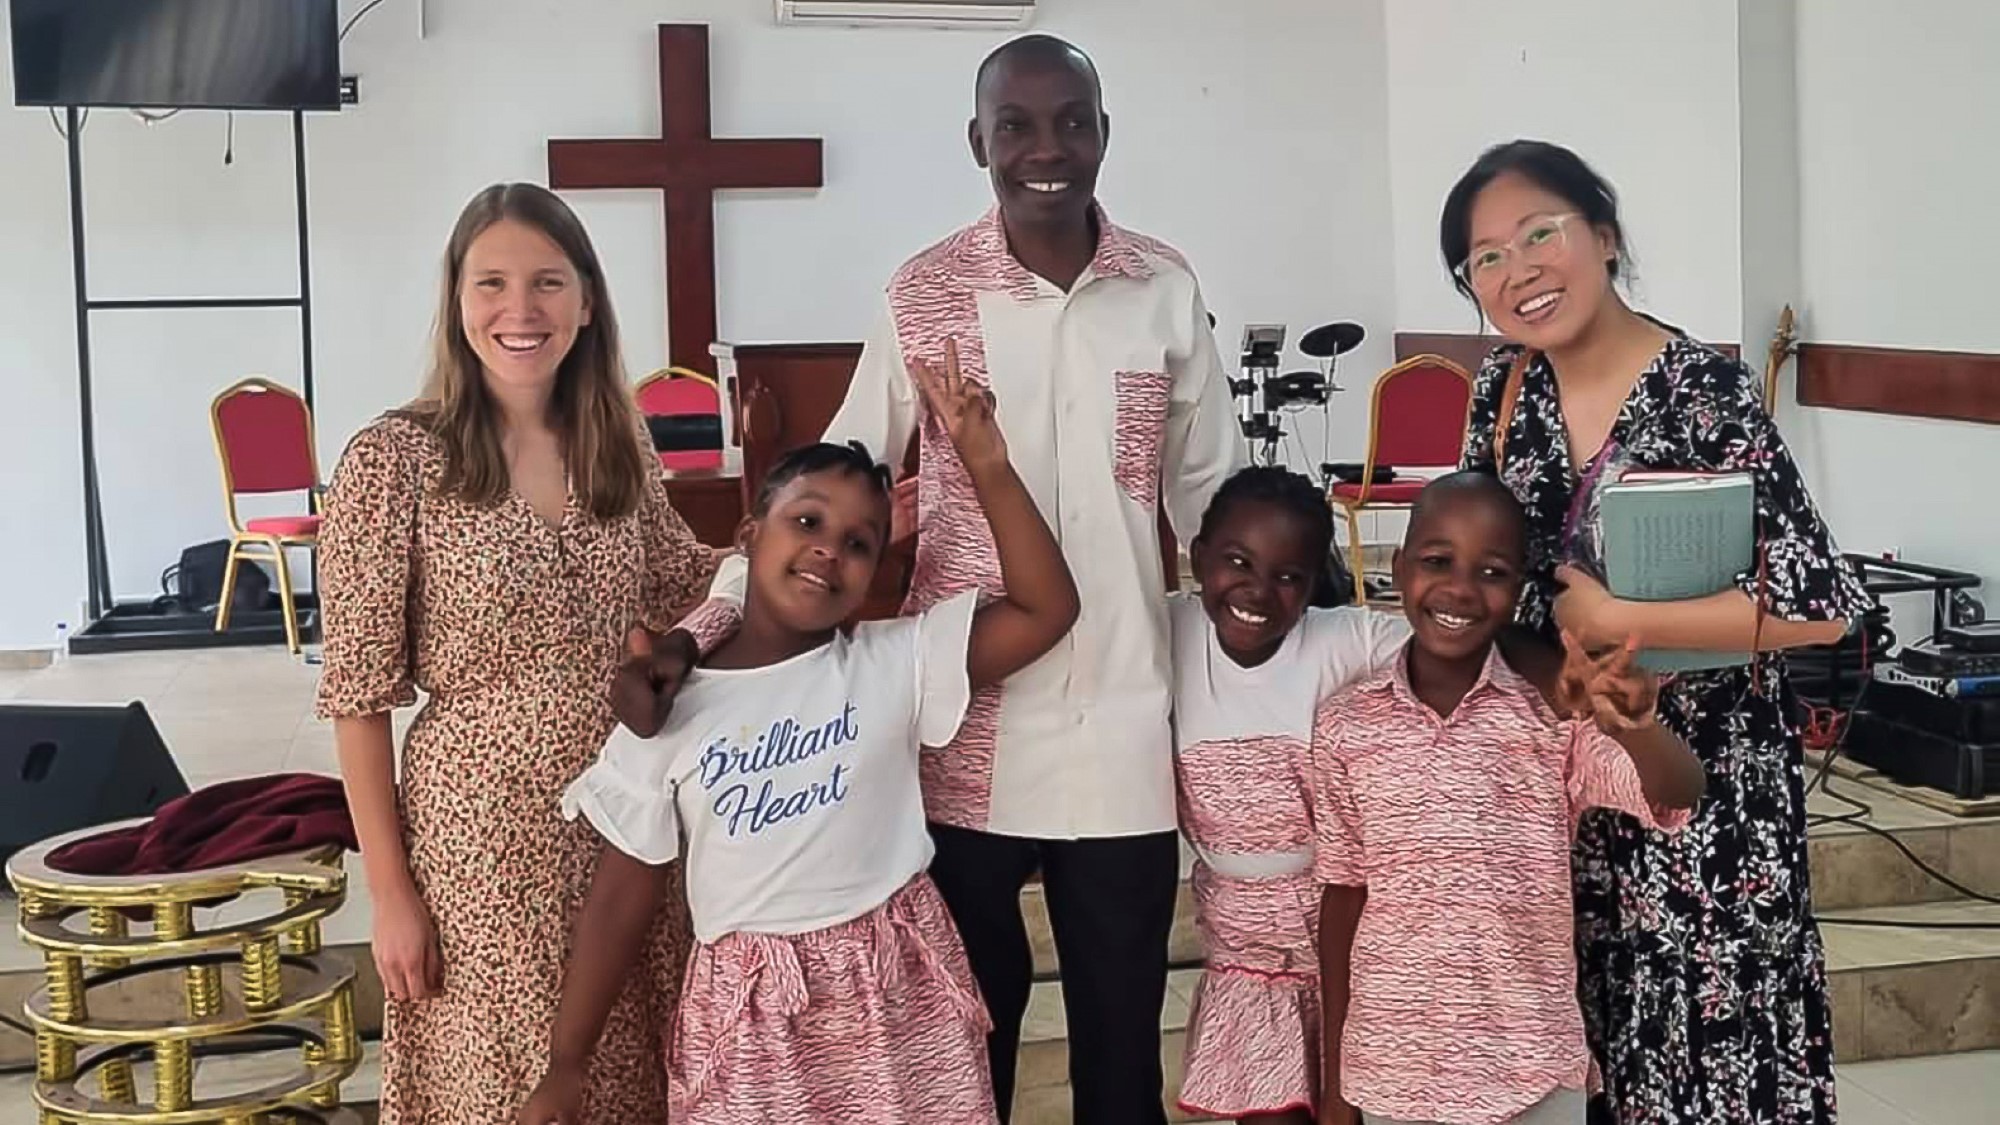 Helene og en familie på gudstjeneste i den internasjonale menigheten "Maison de la destinée"